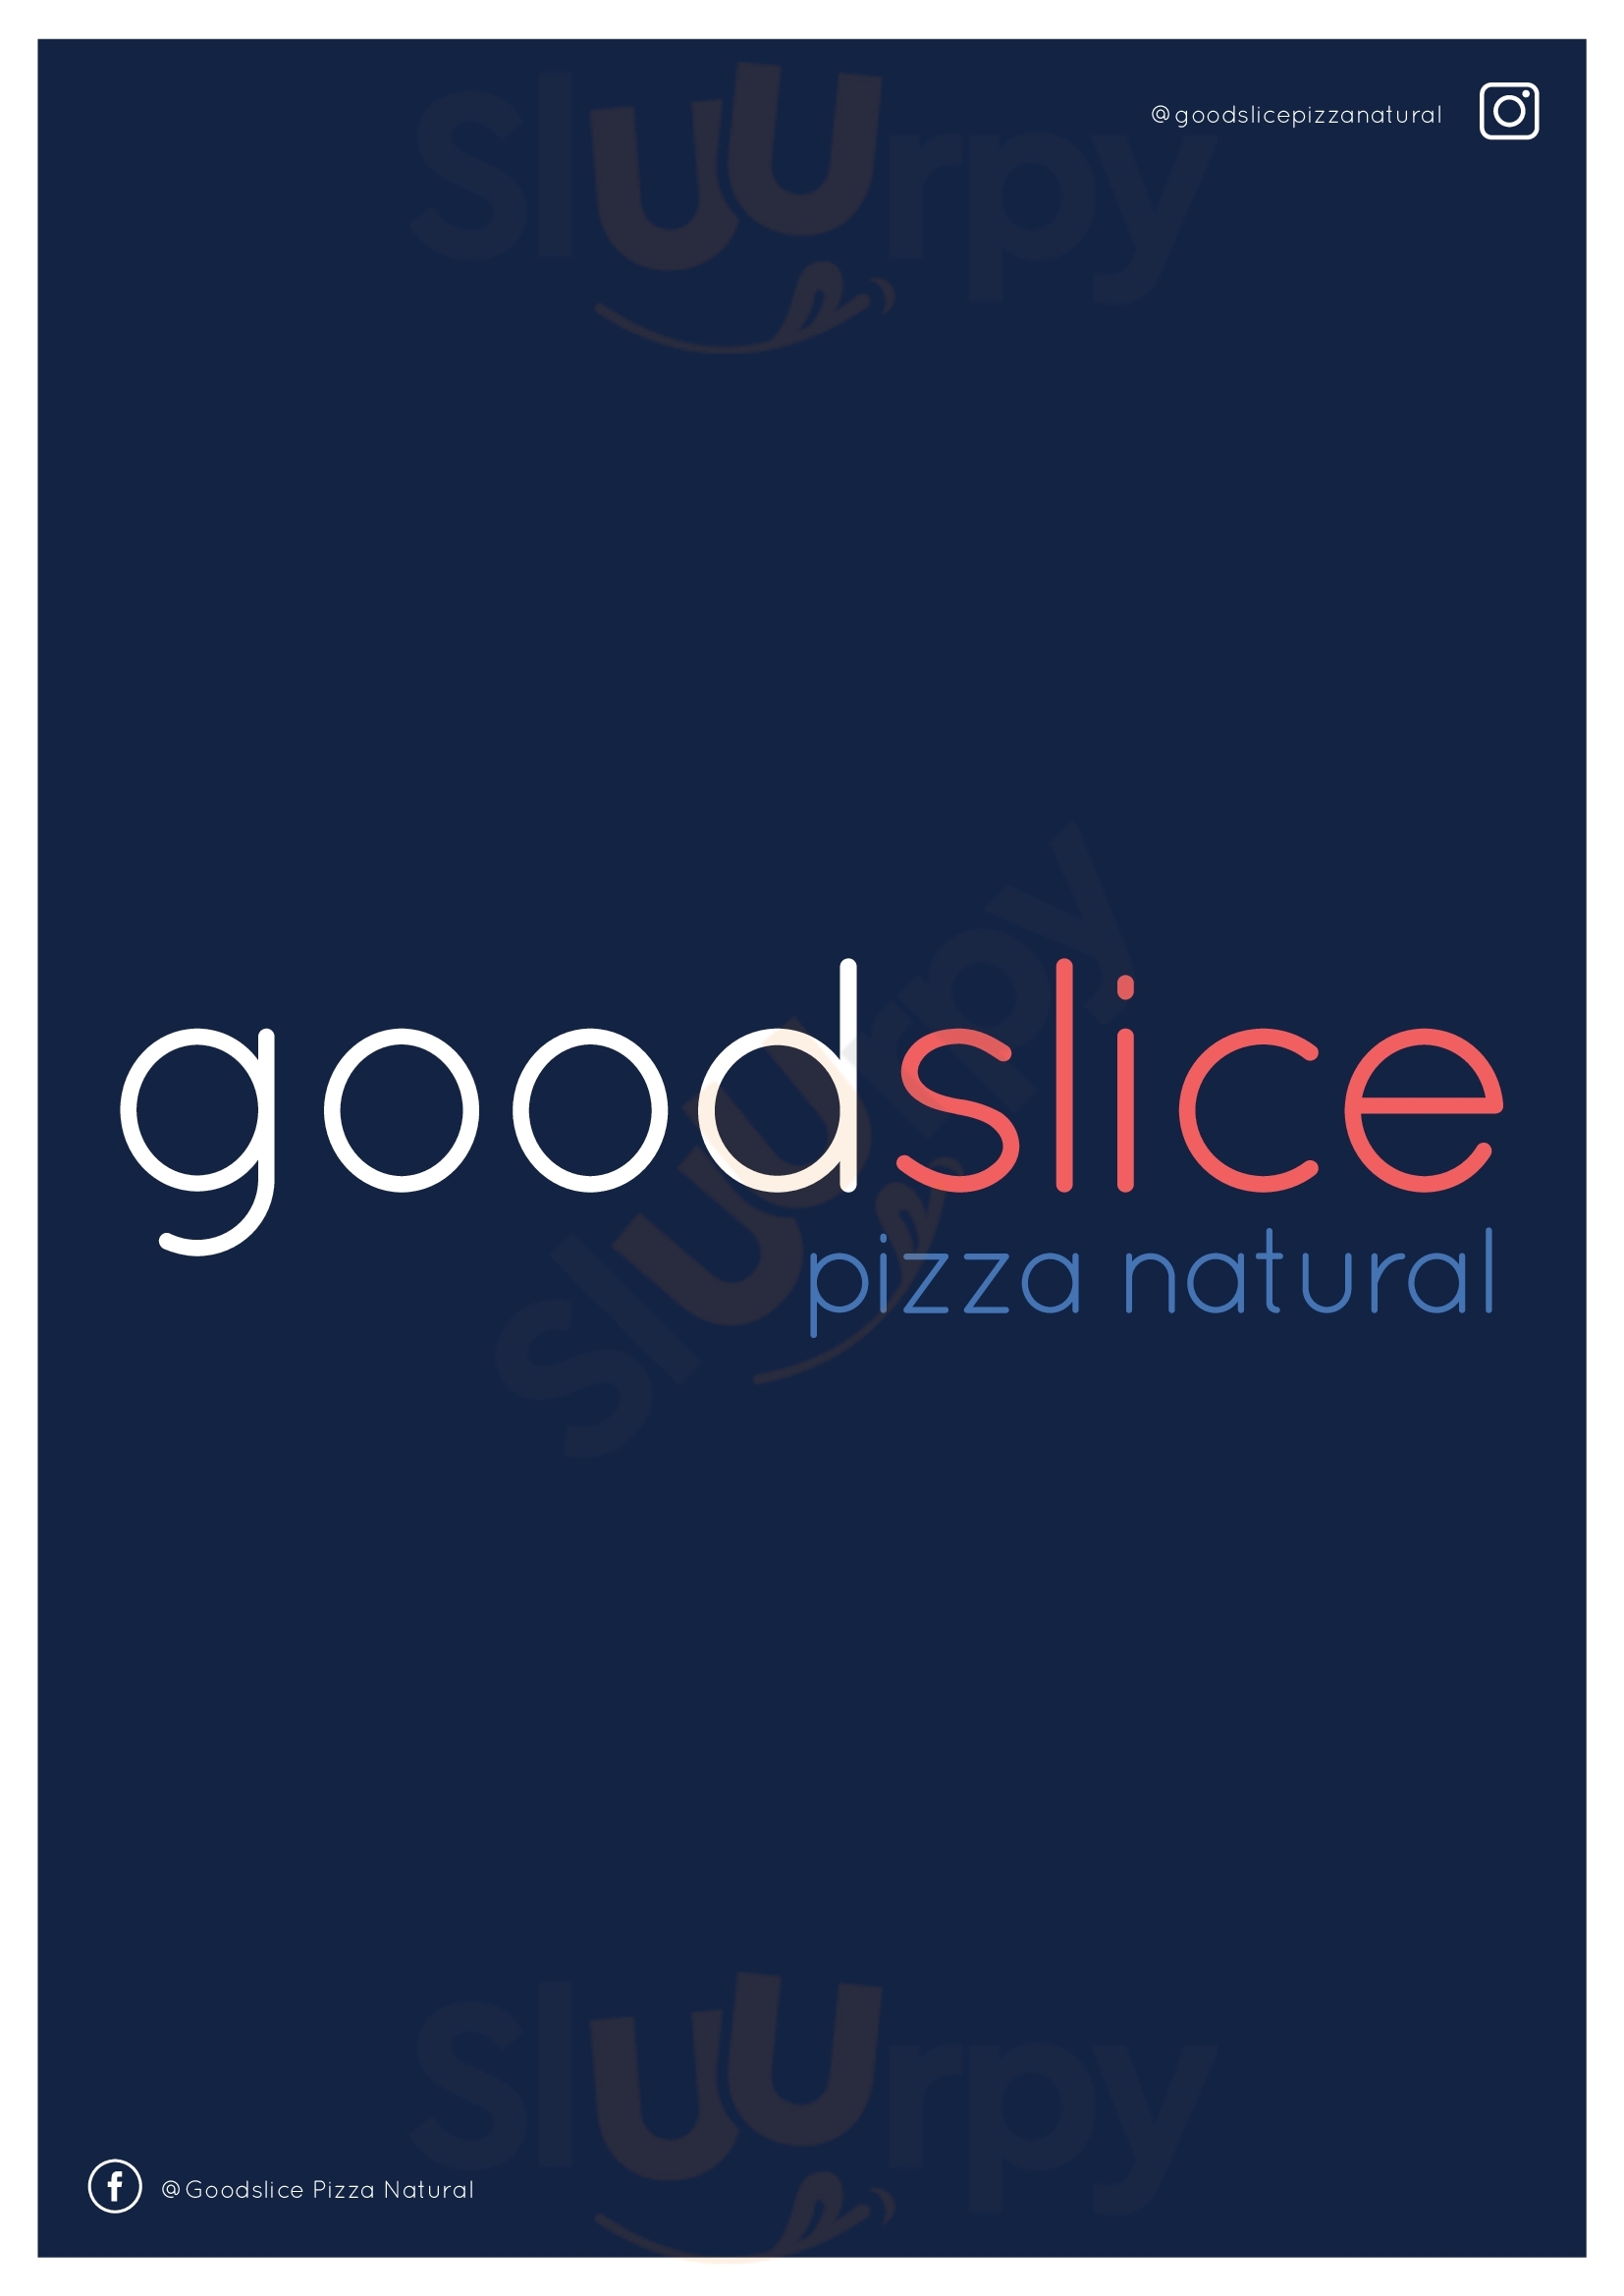 Goodslice Pizza Natural Glenelg Menu - 1